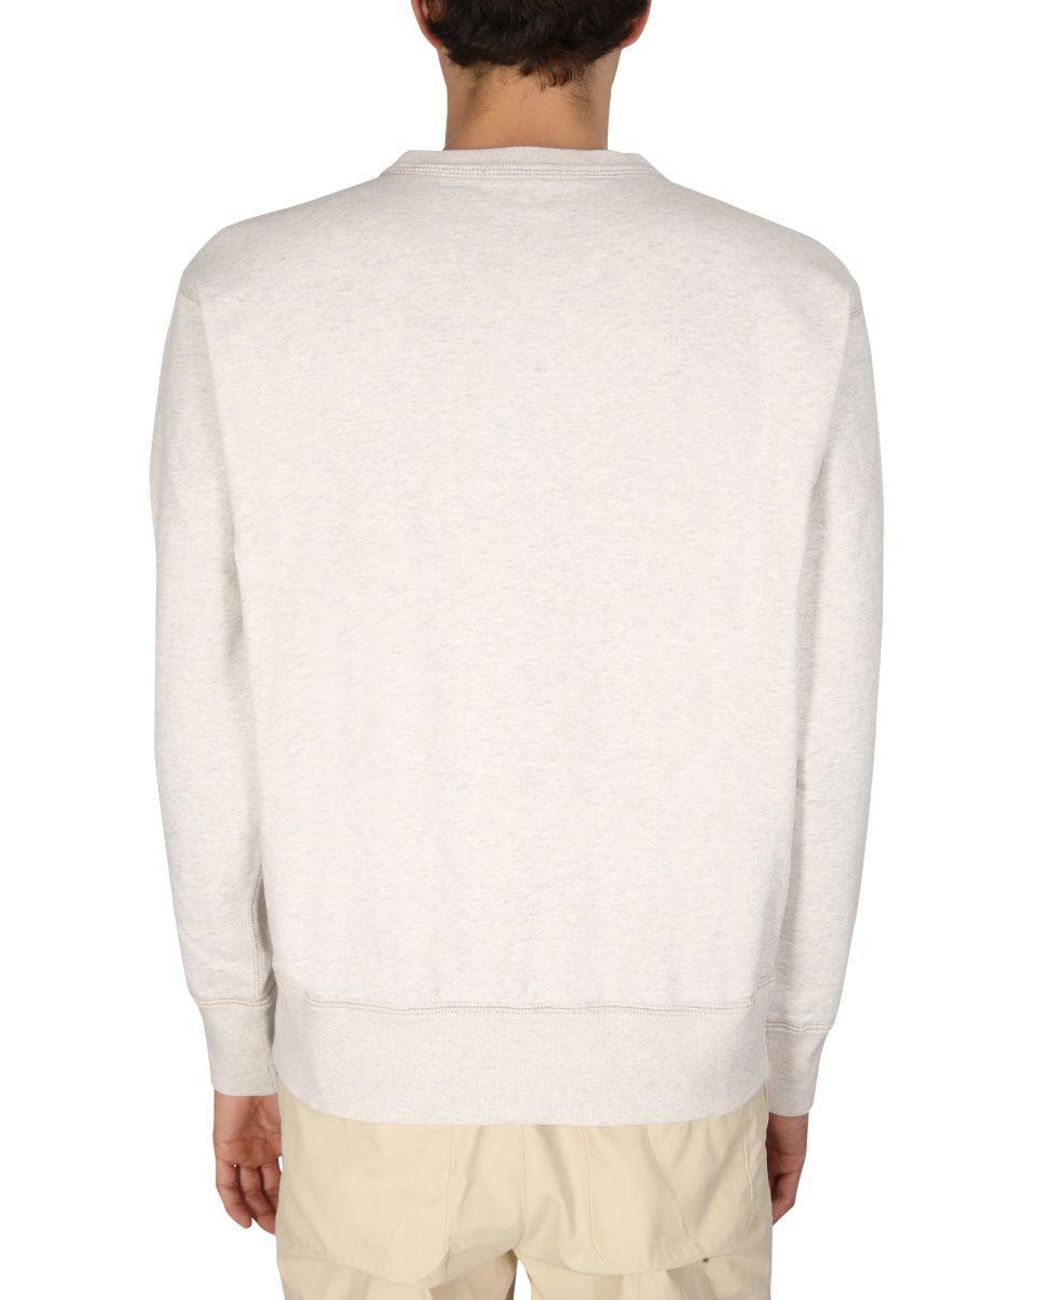 Isabel Marant Baumwolle Andere materialien sweatshirt in Weiß für Herren Herren Bekleidung Kurze Hosen Freizeitshorts 